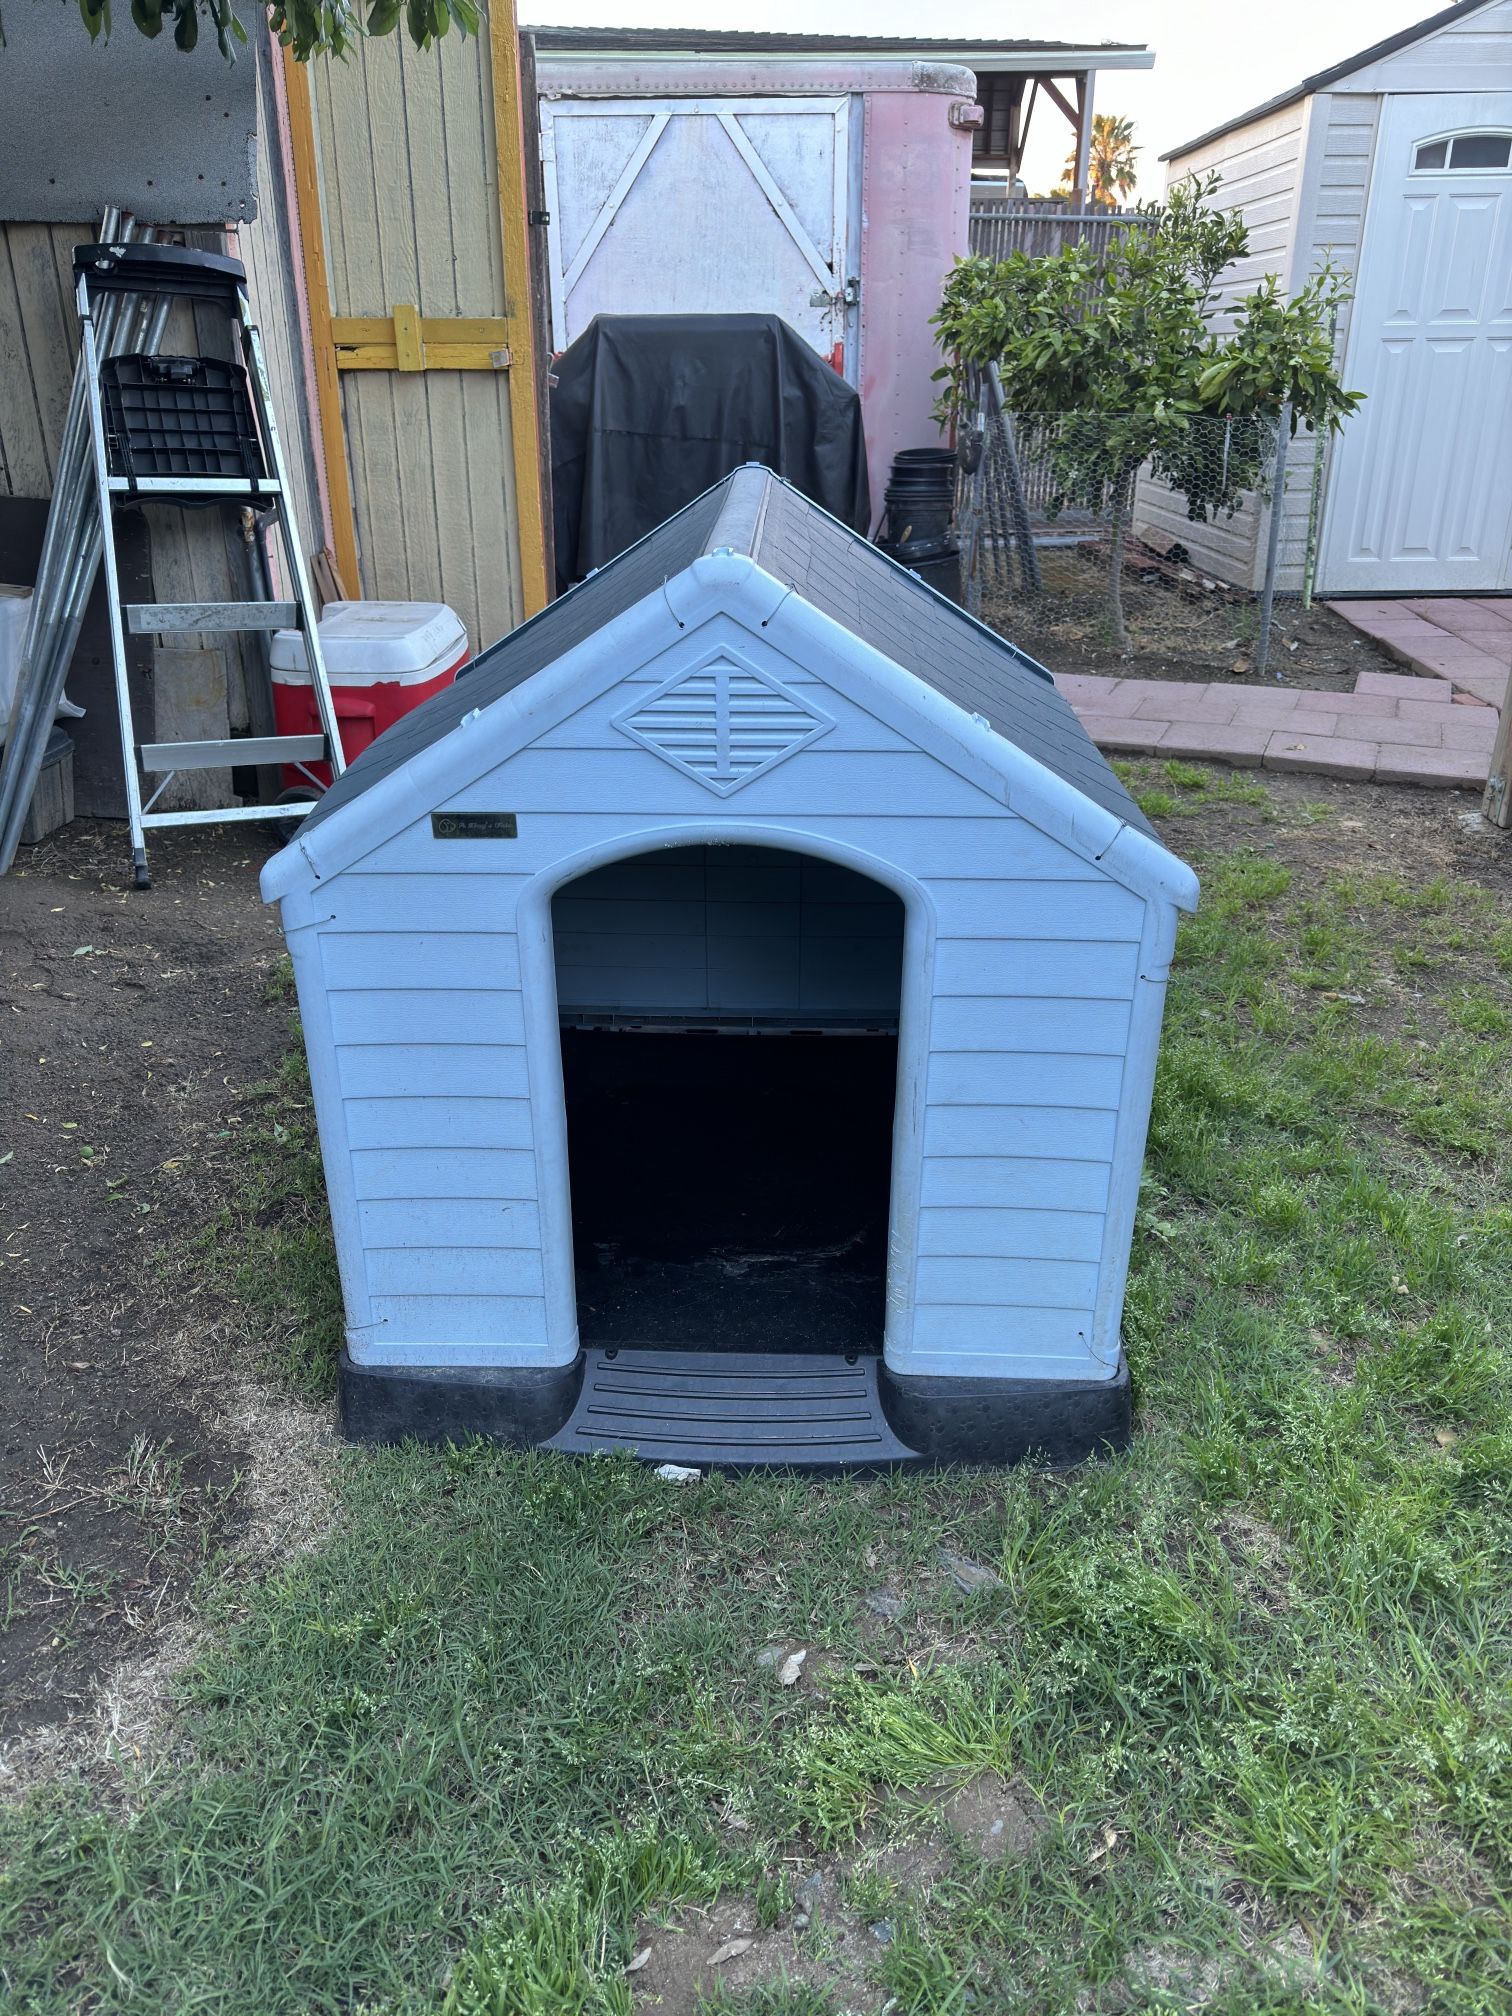 Large Dog House